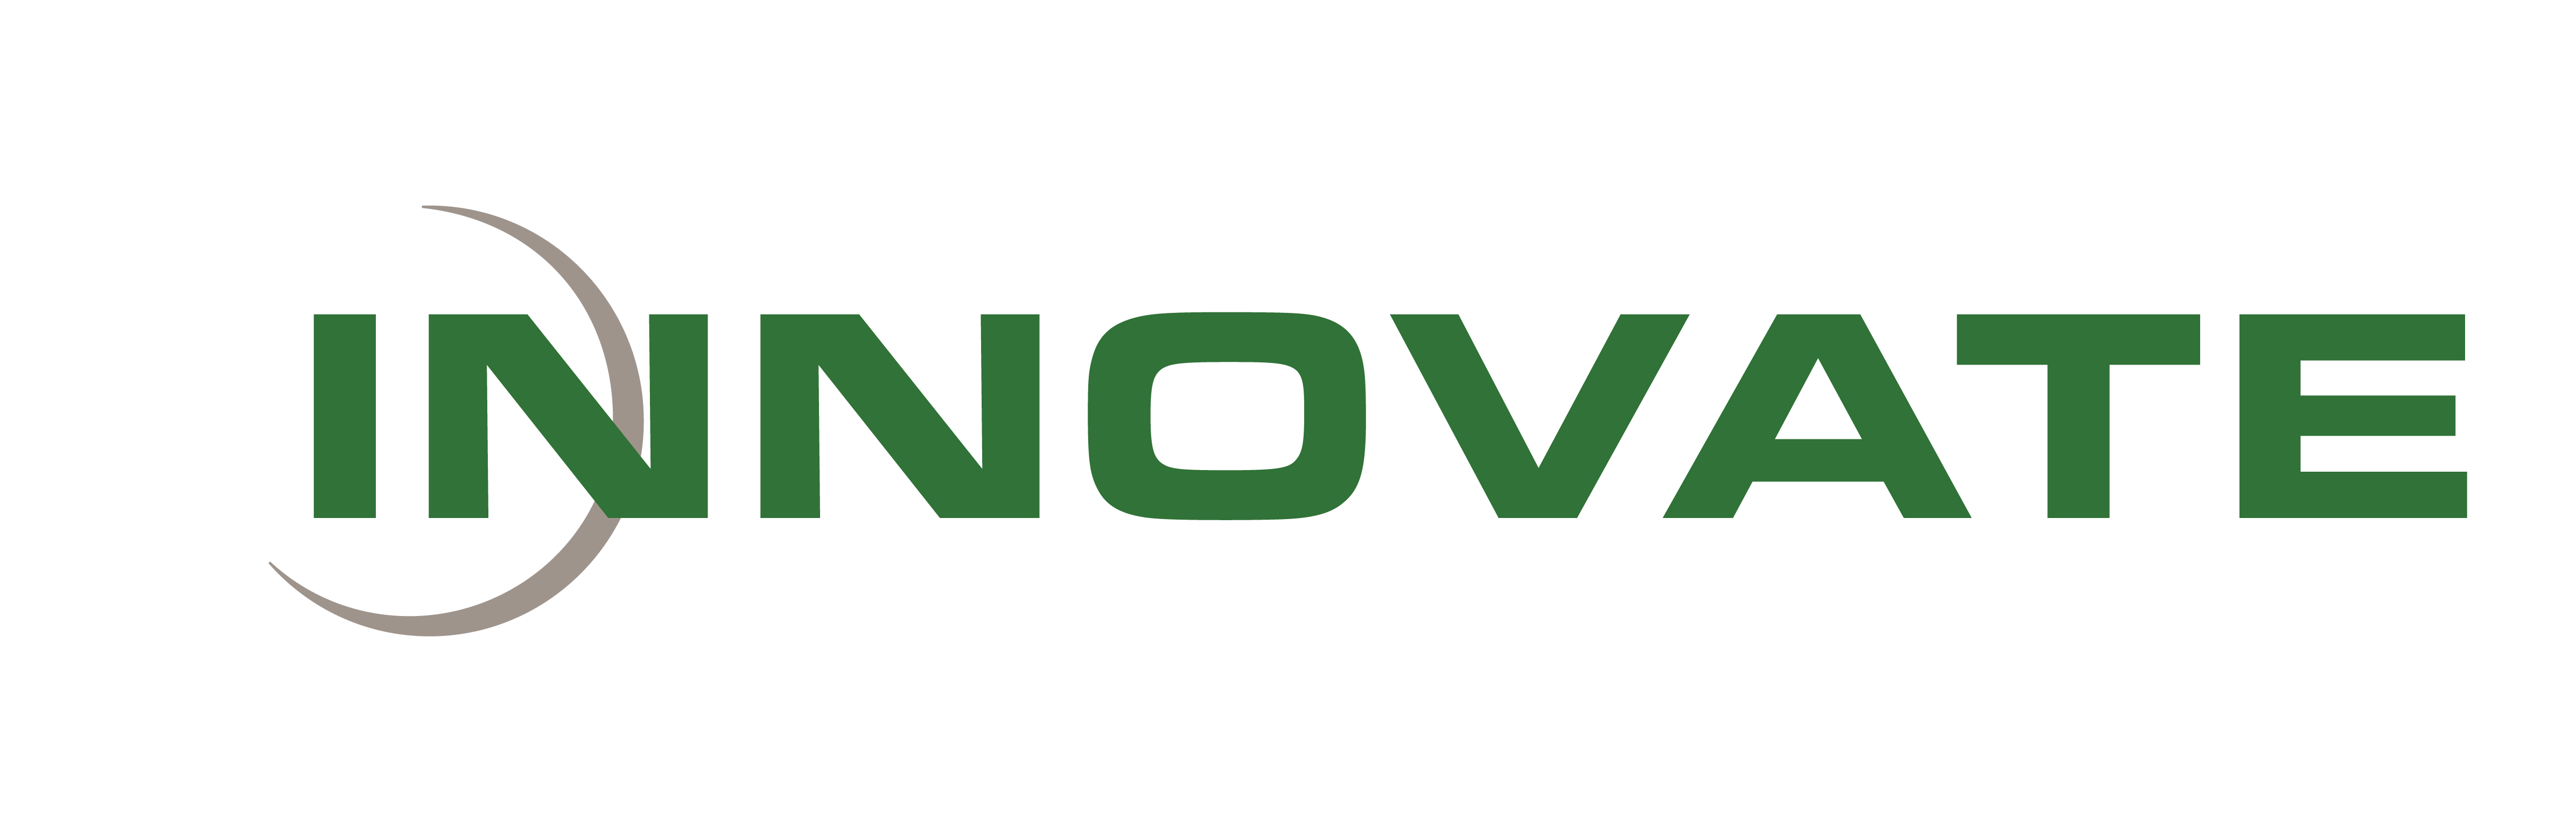 Innovate Auto Finance-grey-05